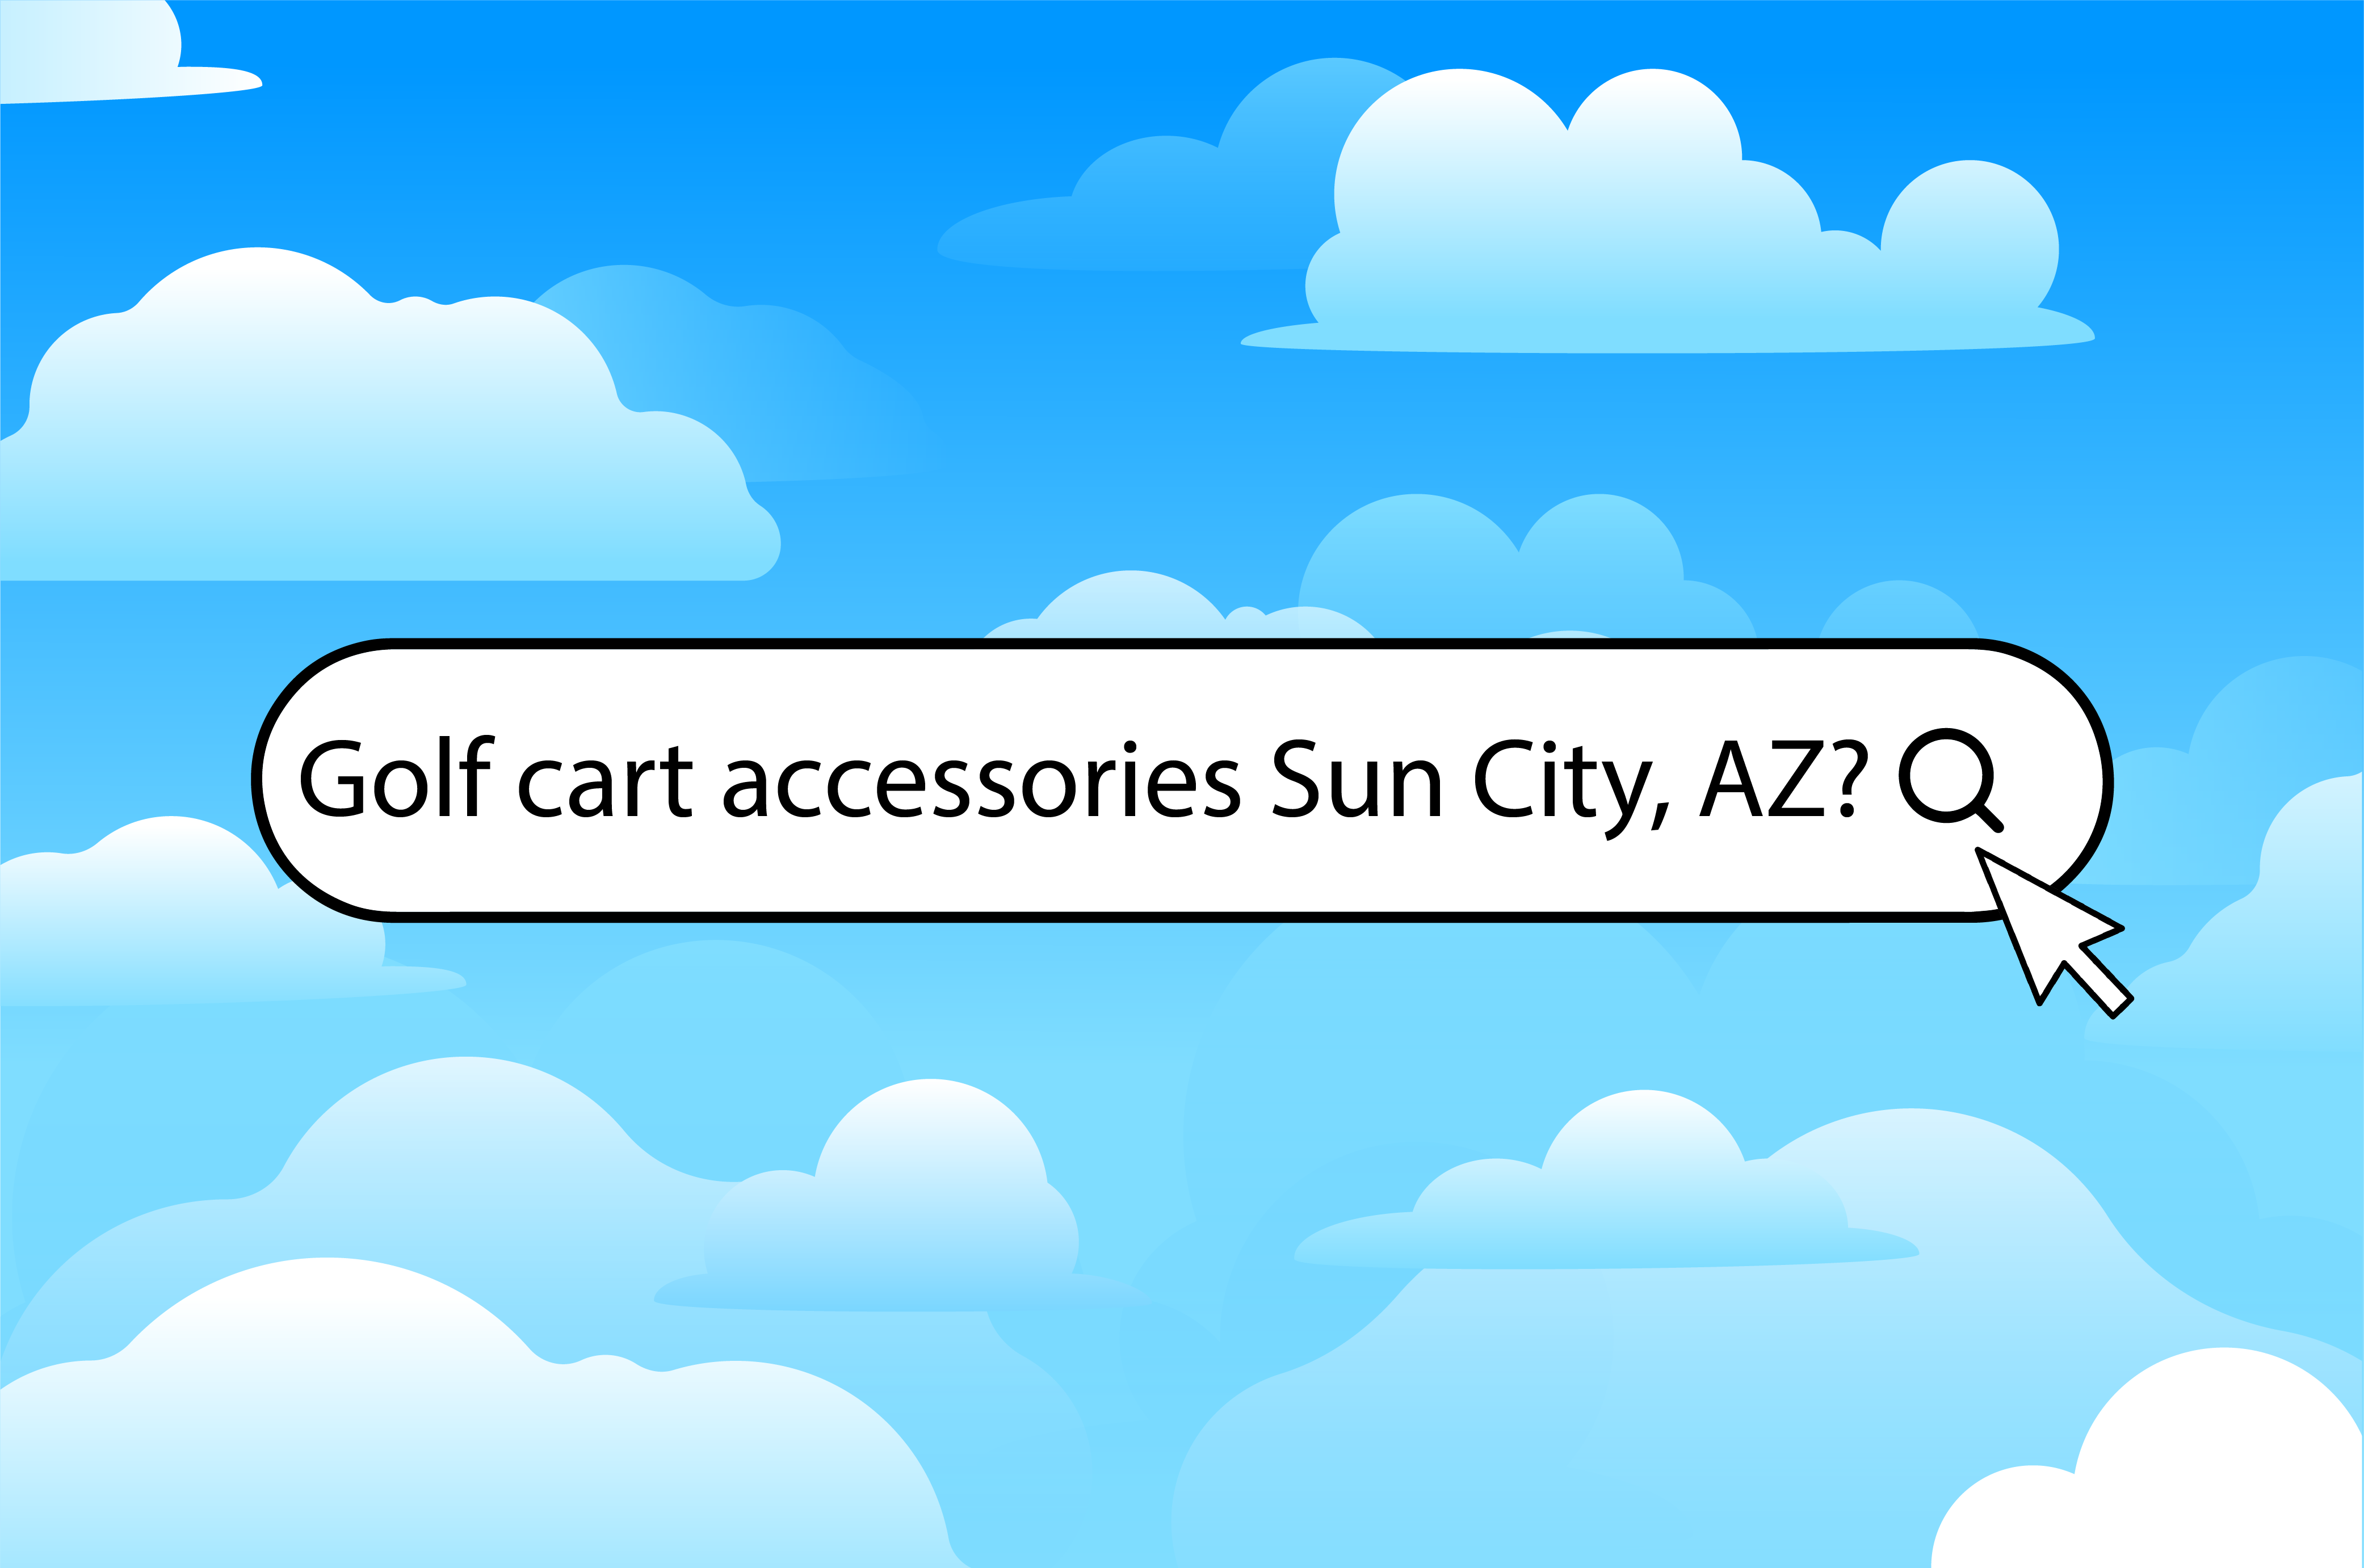 Three ways to find golf cart accessories in Sun City, AZ